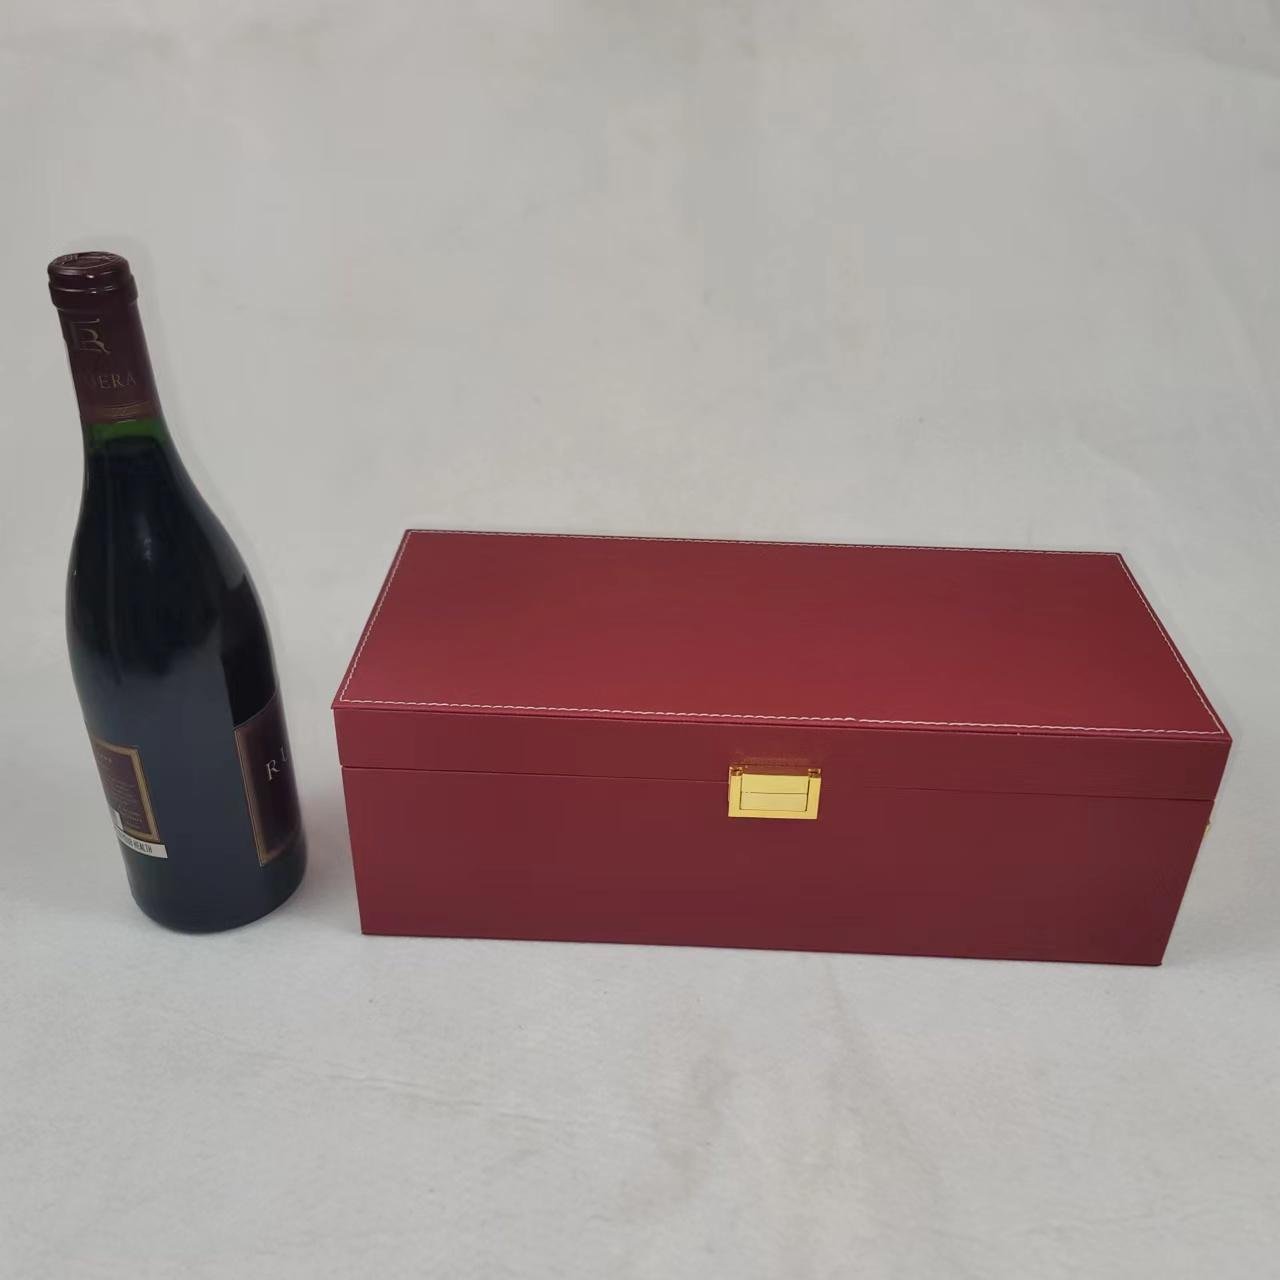 紅酒木盒 葡萄酒木禮盒 2